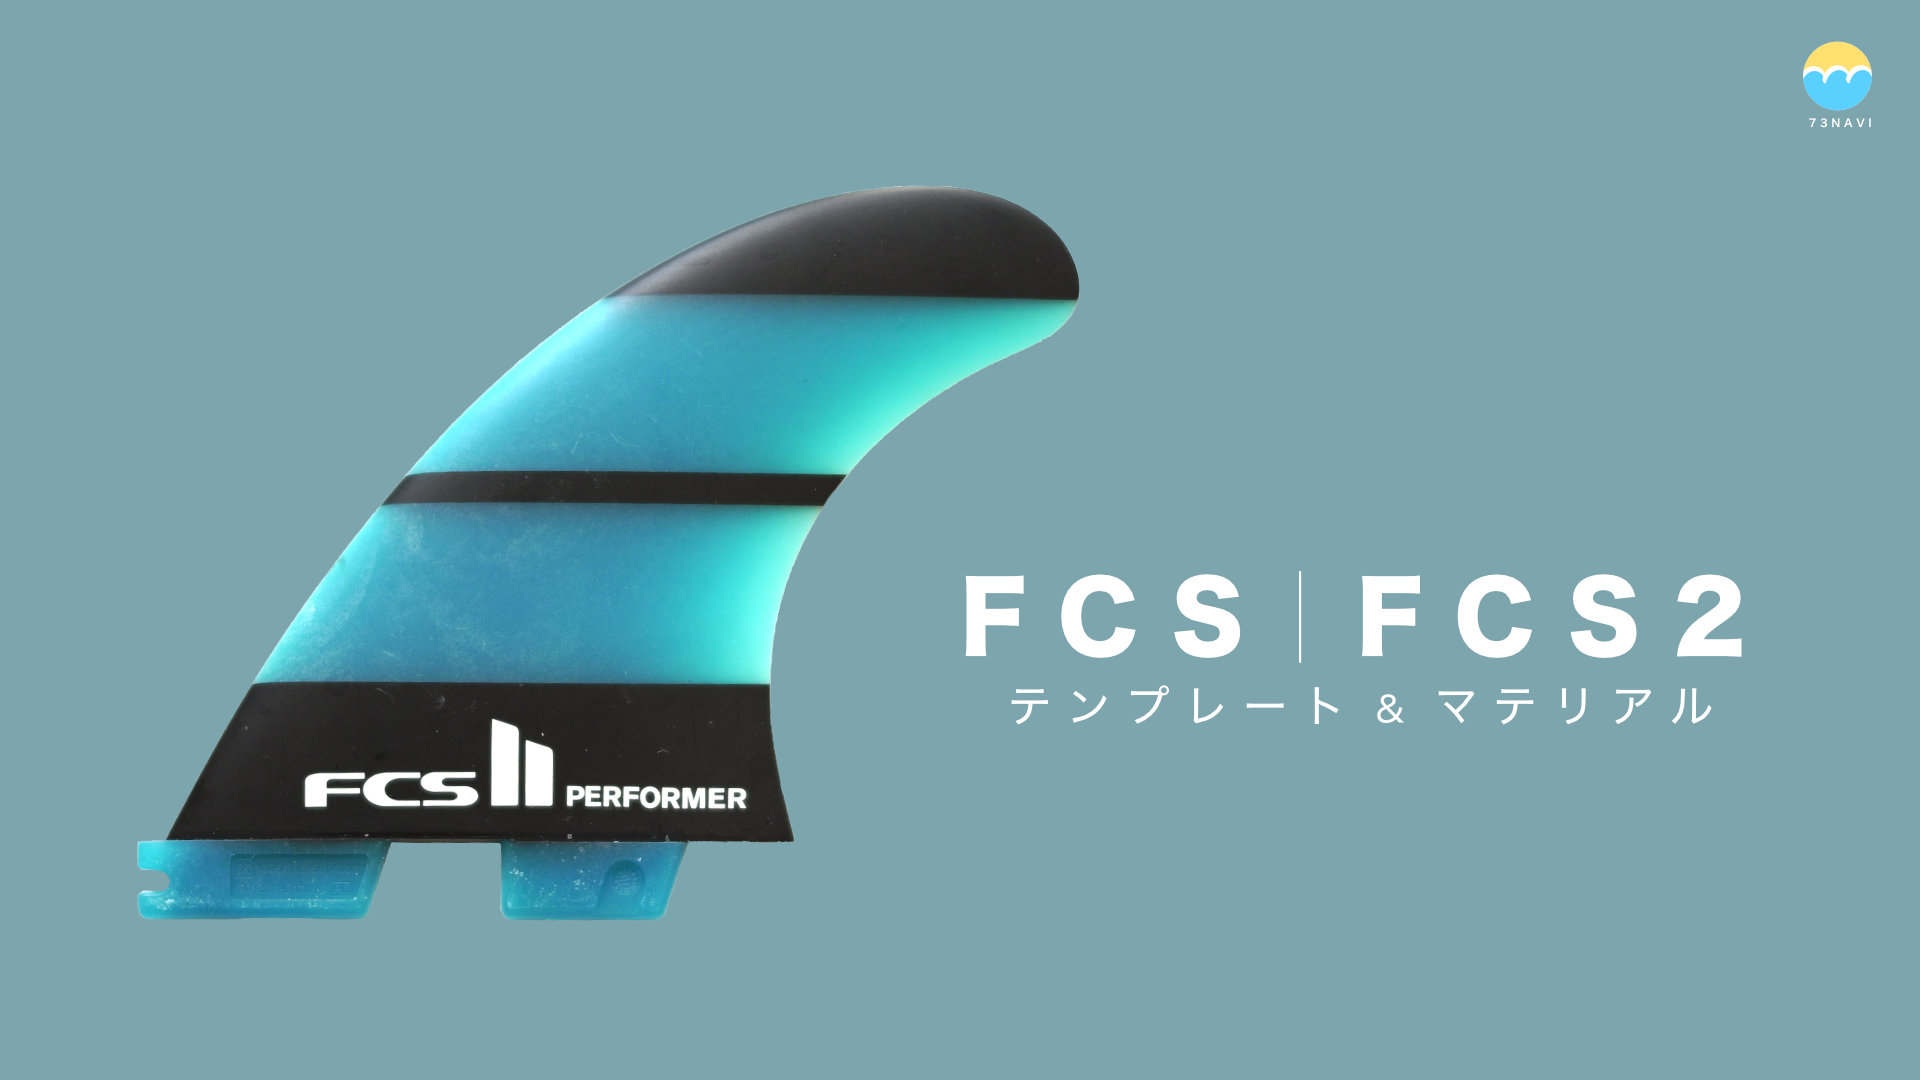 豊富な品揃え FCSⅡ トライフィン FTモデル AirCore MEDIUM サーフィン